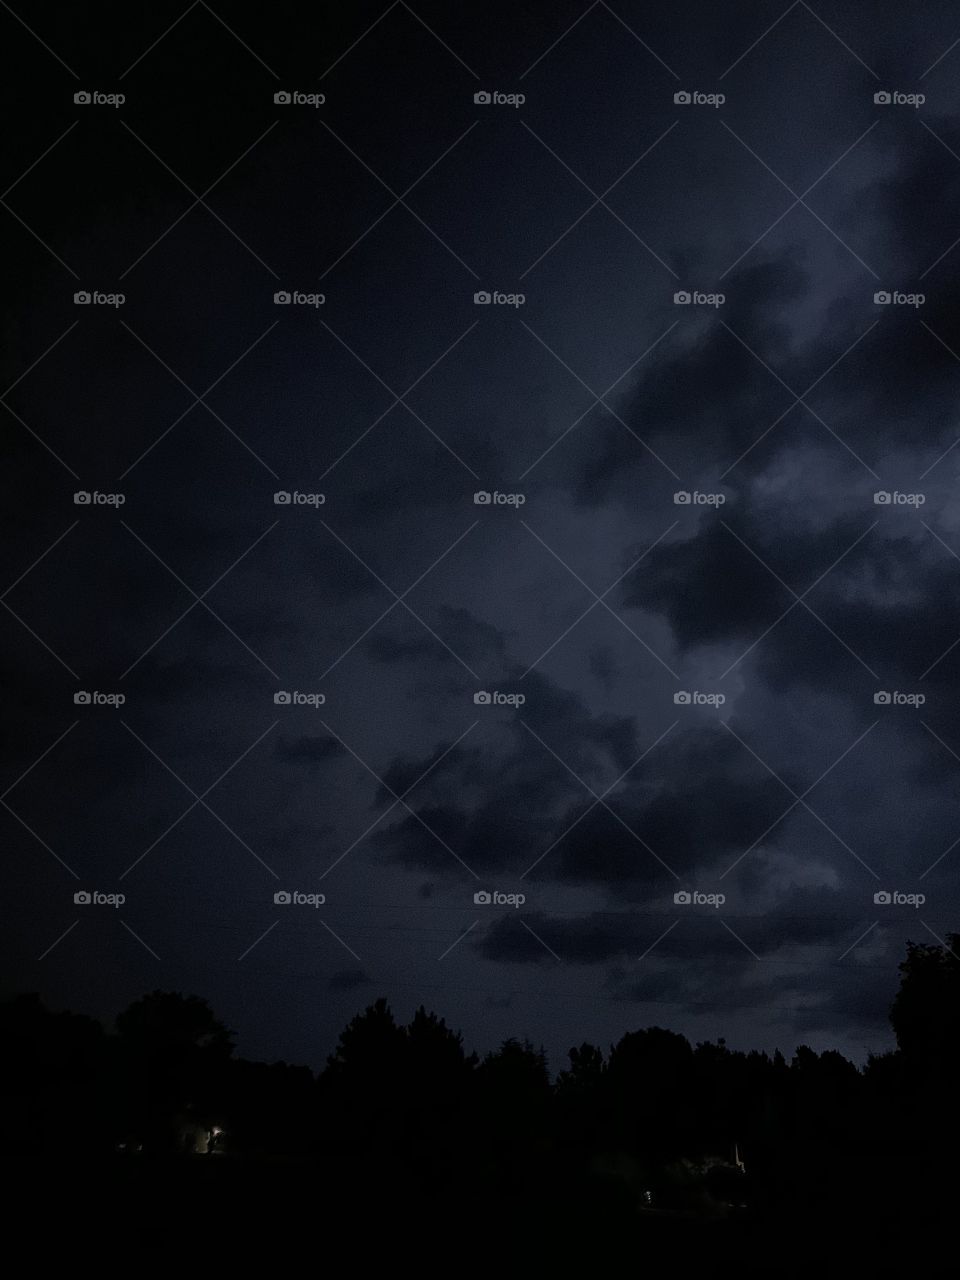 Carolina Stormy Night-lightning flash